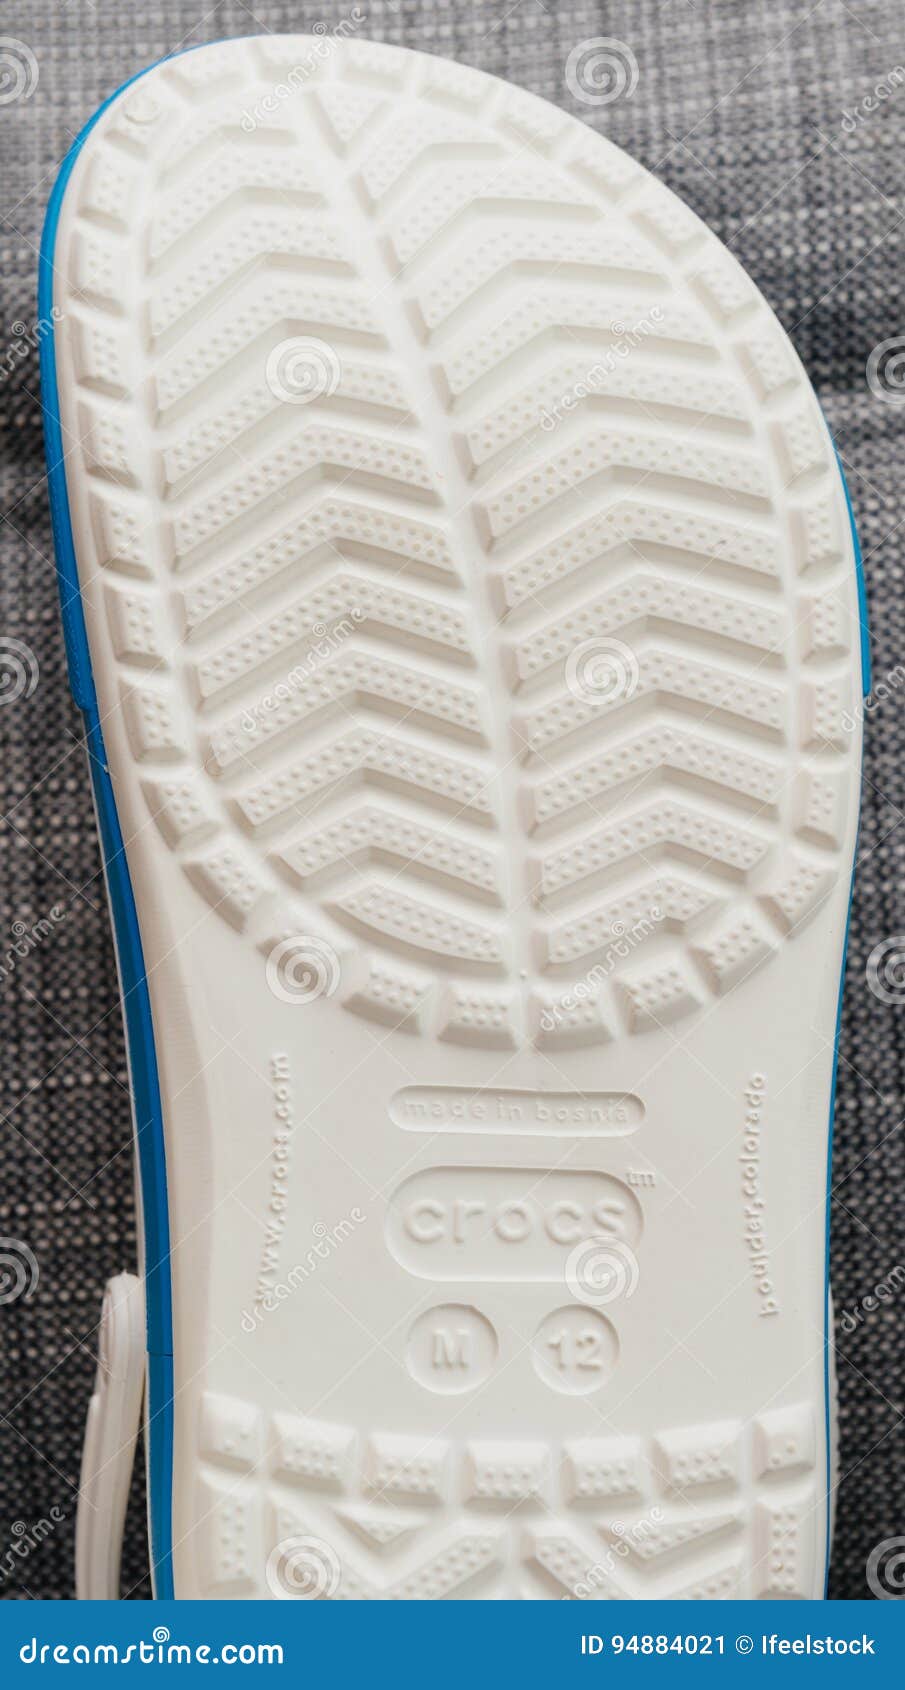 Crocs Clogs Shoes Shopping Sole 